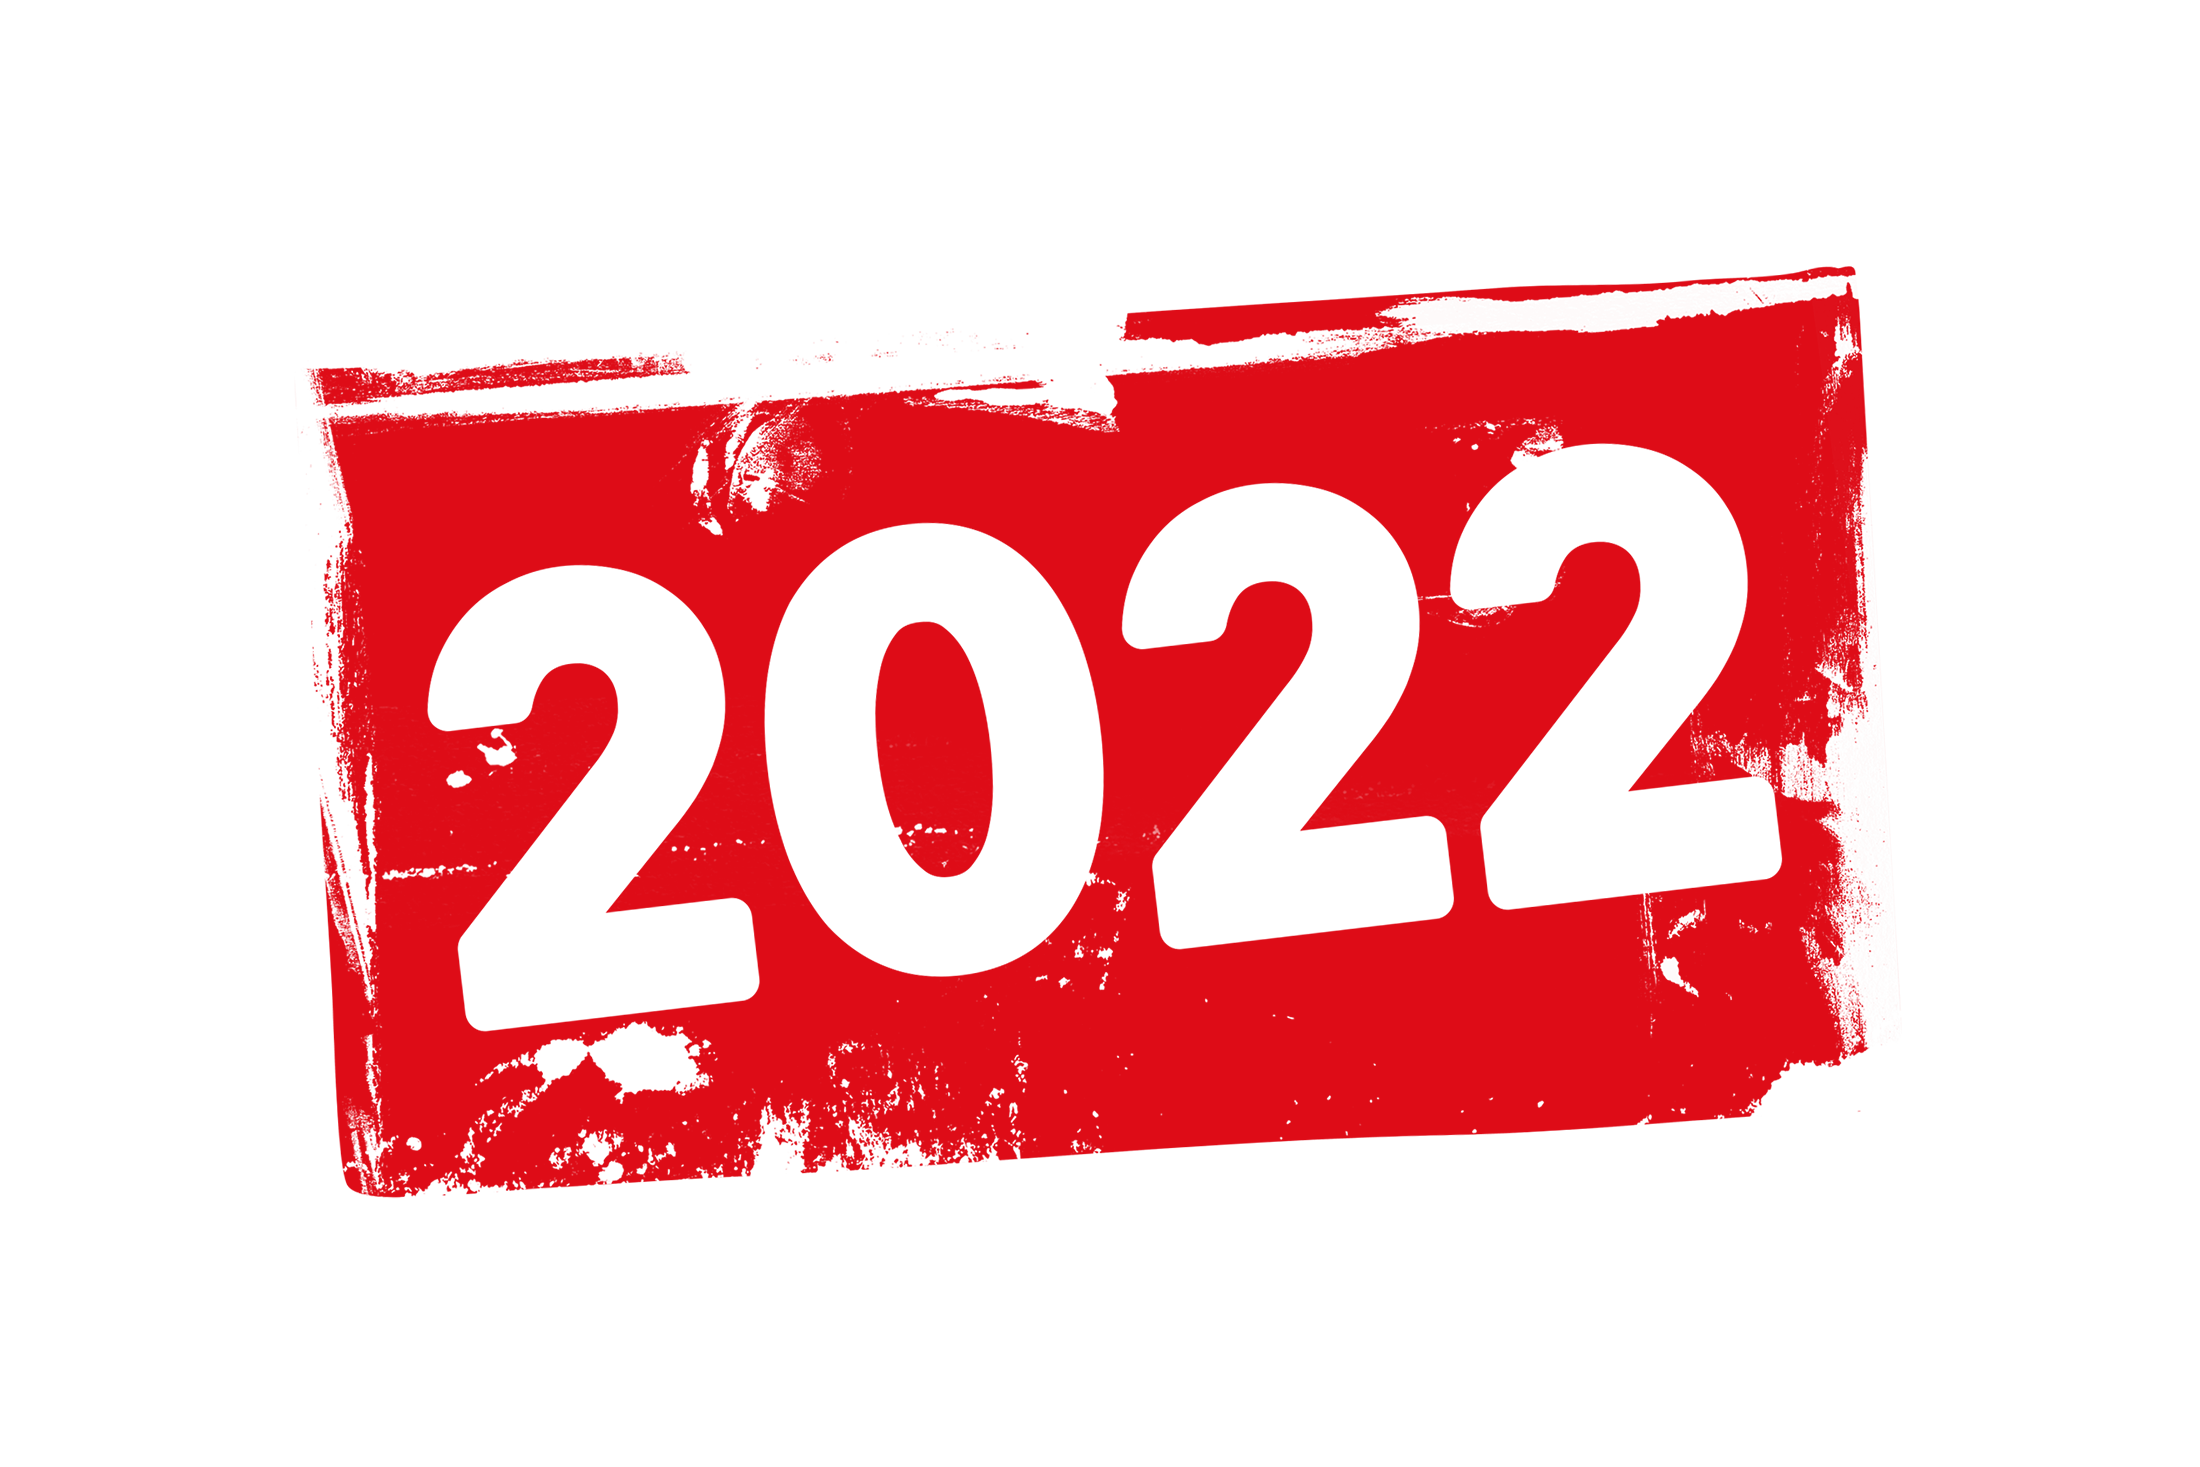 Année 2022